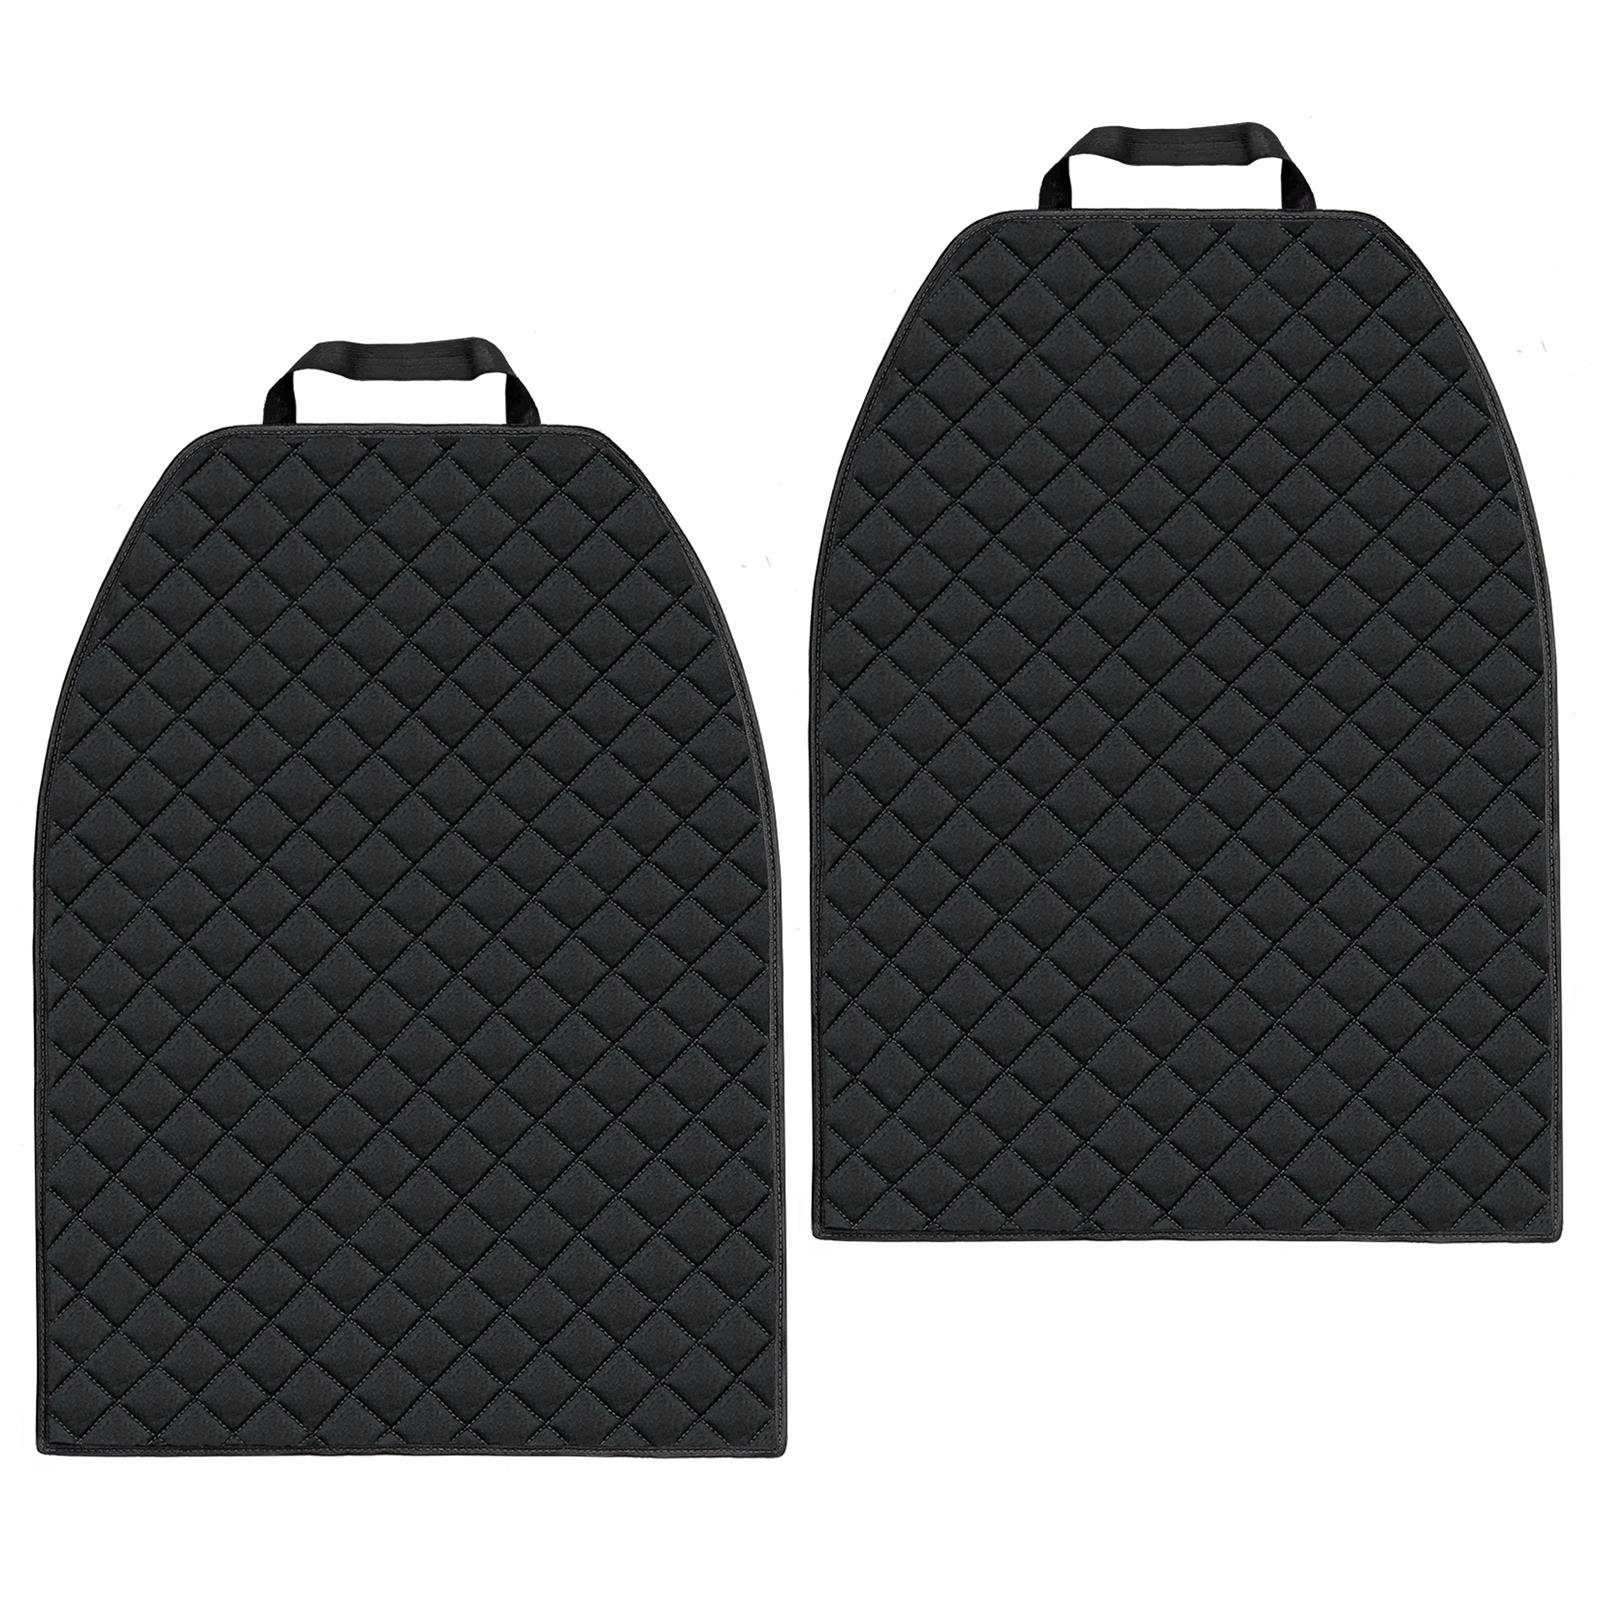 L & P Car Design Auto-Rückenlehnenschutz Rückenlehnenschoner aus Cordura Material Sitzschoner, 2 Stück Schwarz